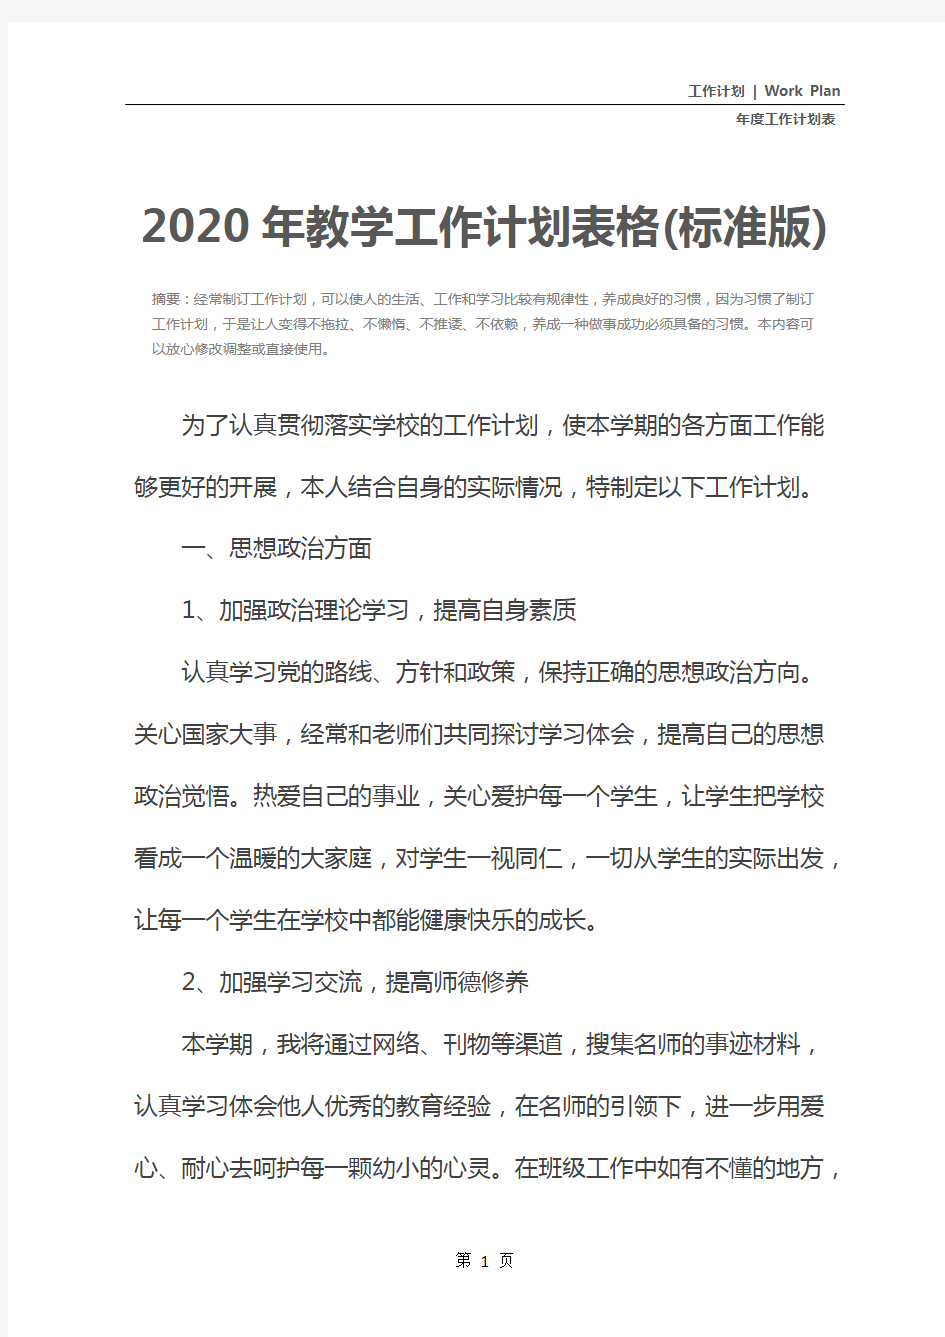 2020年教学工作计划表格(标准版)